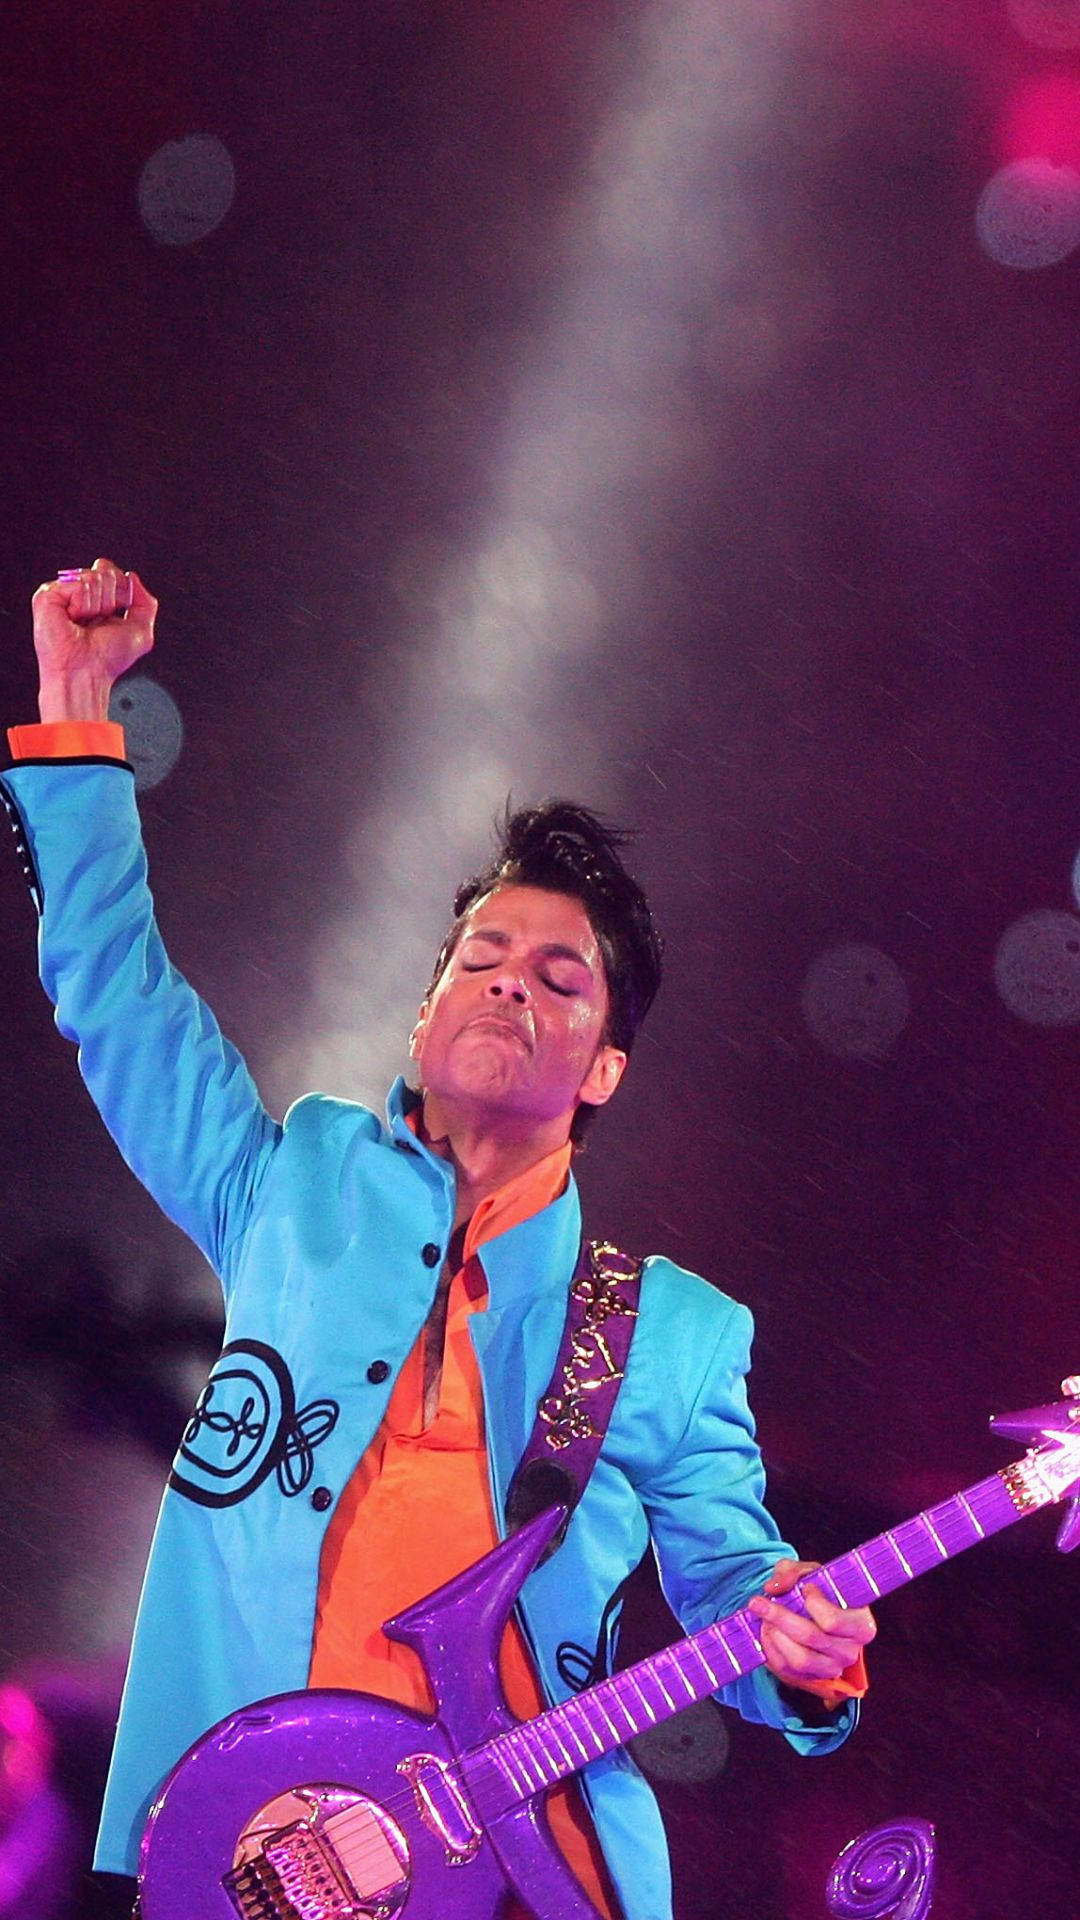 Emotional Prince At Concert Background